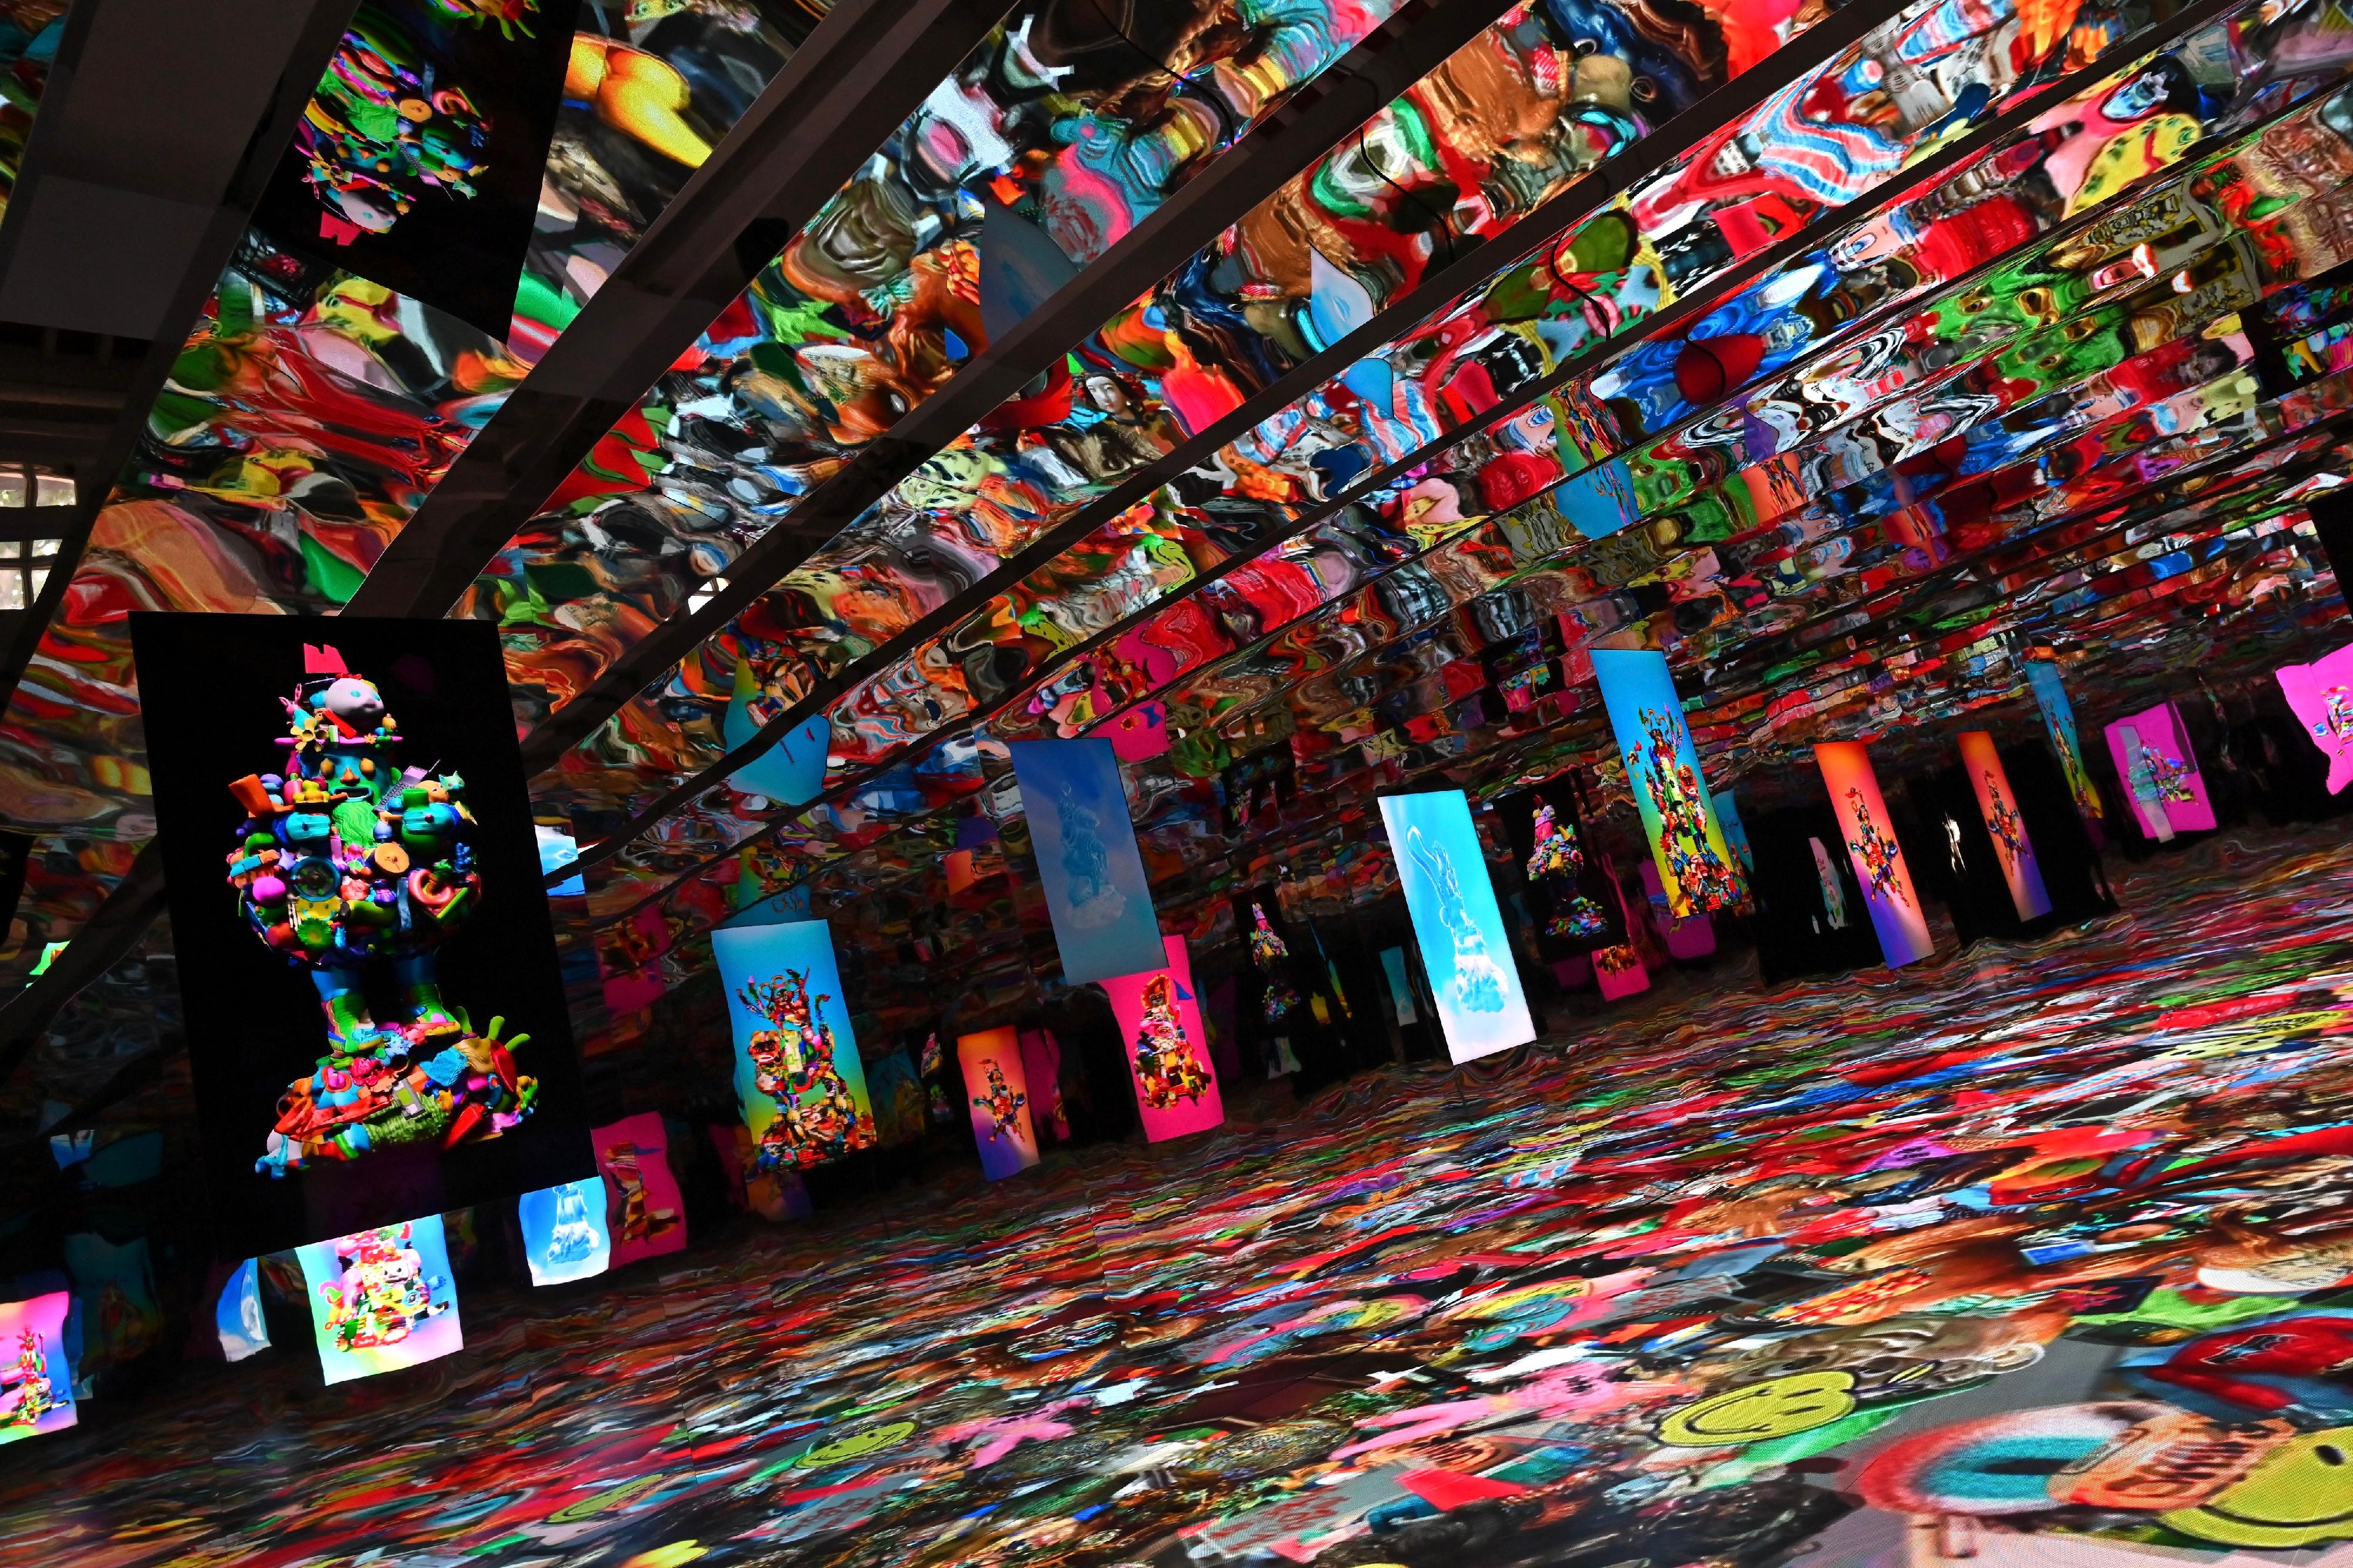 油街實現藝術空間明日（三月二十日）起至七月二十八日推出新展覽「油街焦點──加里‧卡德之人山人海」，運用動畫和音效引領觀眾進入沉浸式的視覺及感觀體驗。